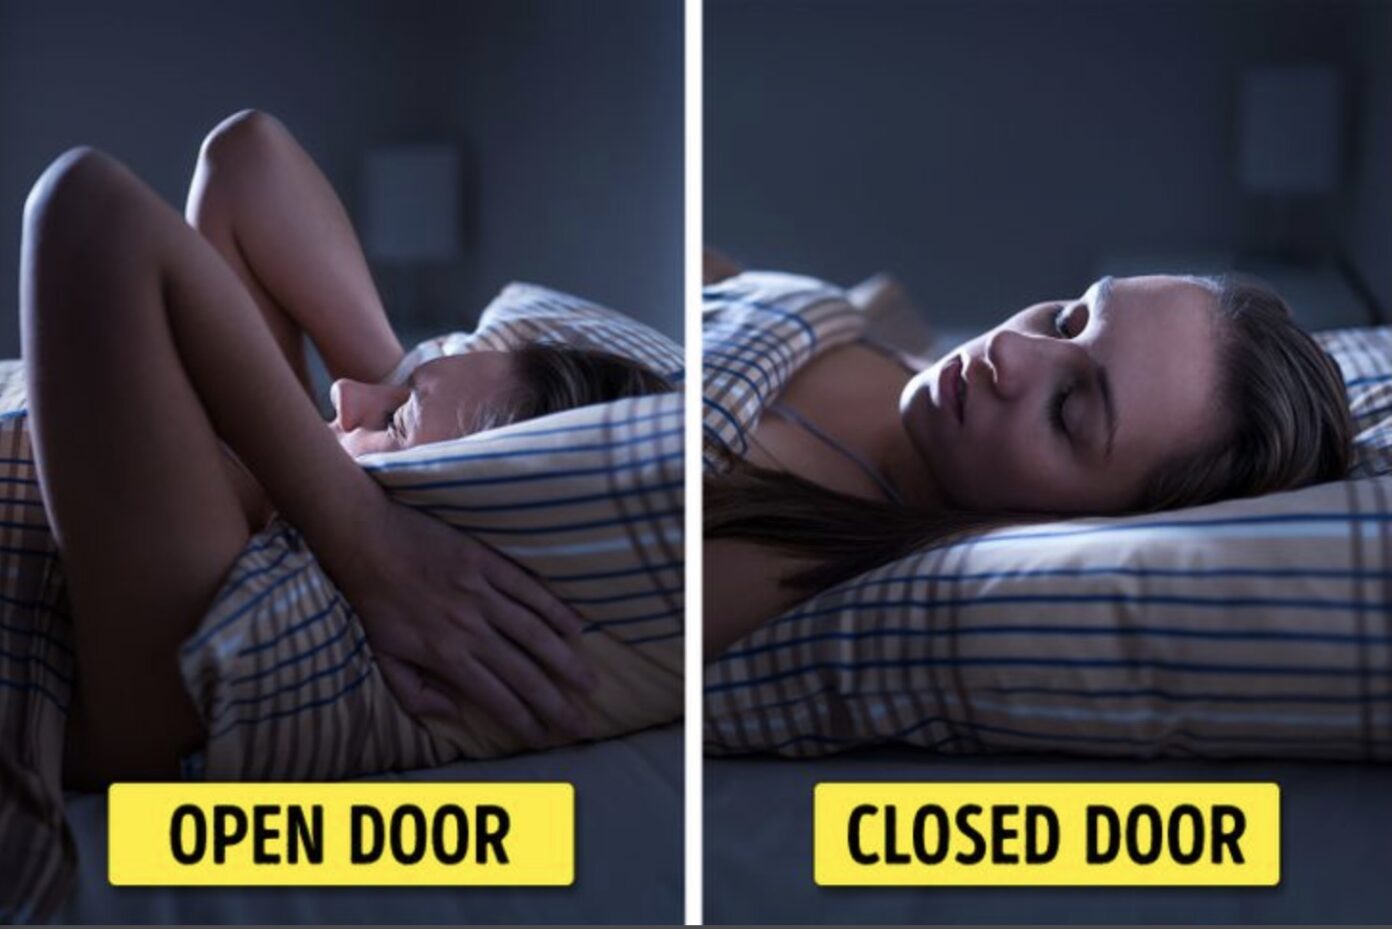 đảm bảo chất lượng giấc ngủ khi đóng cửa phòng